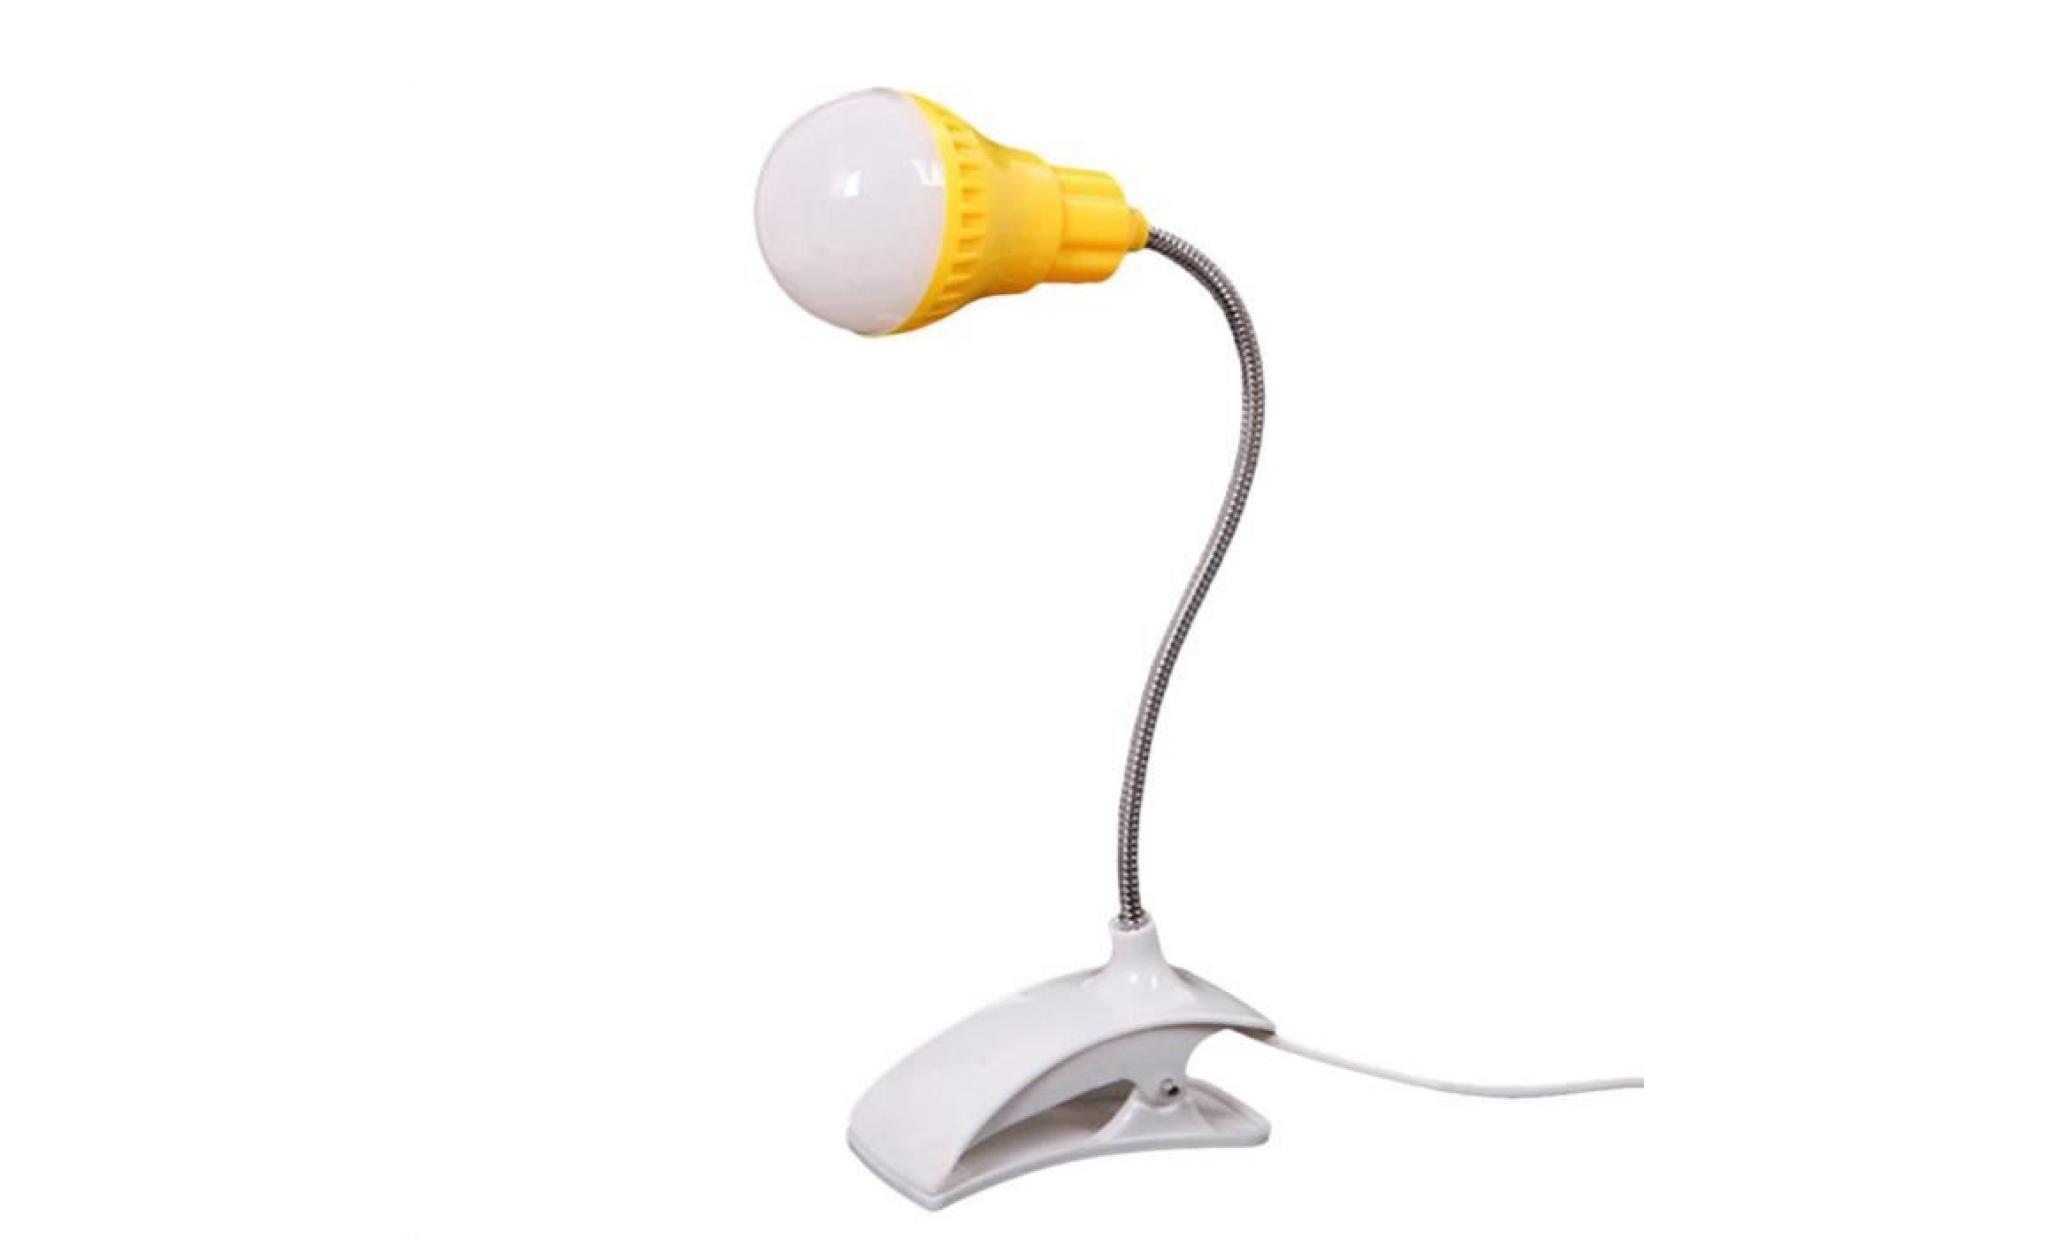 nouveau support de table lampe usb du personnel étudiant de lecture table bureau lampe gn éclairage1893 pas cher